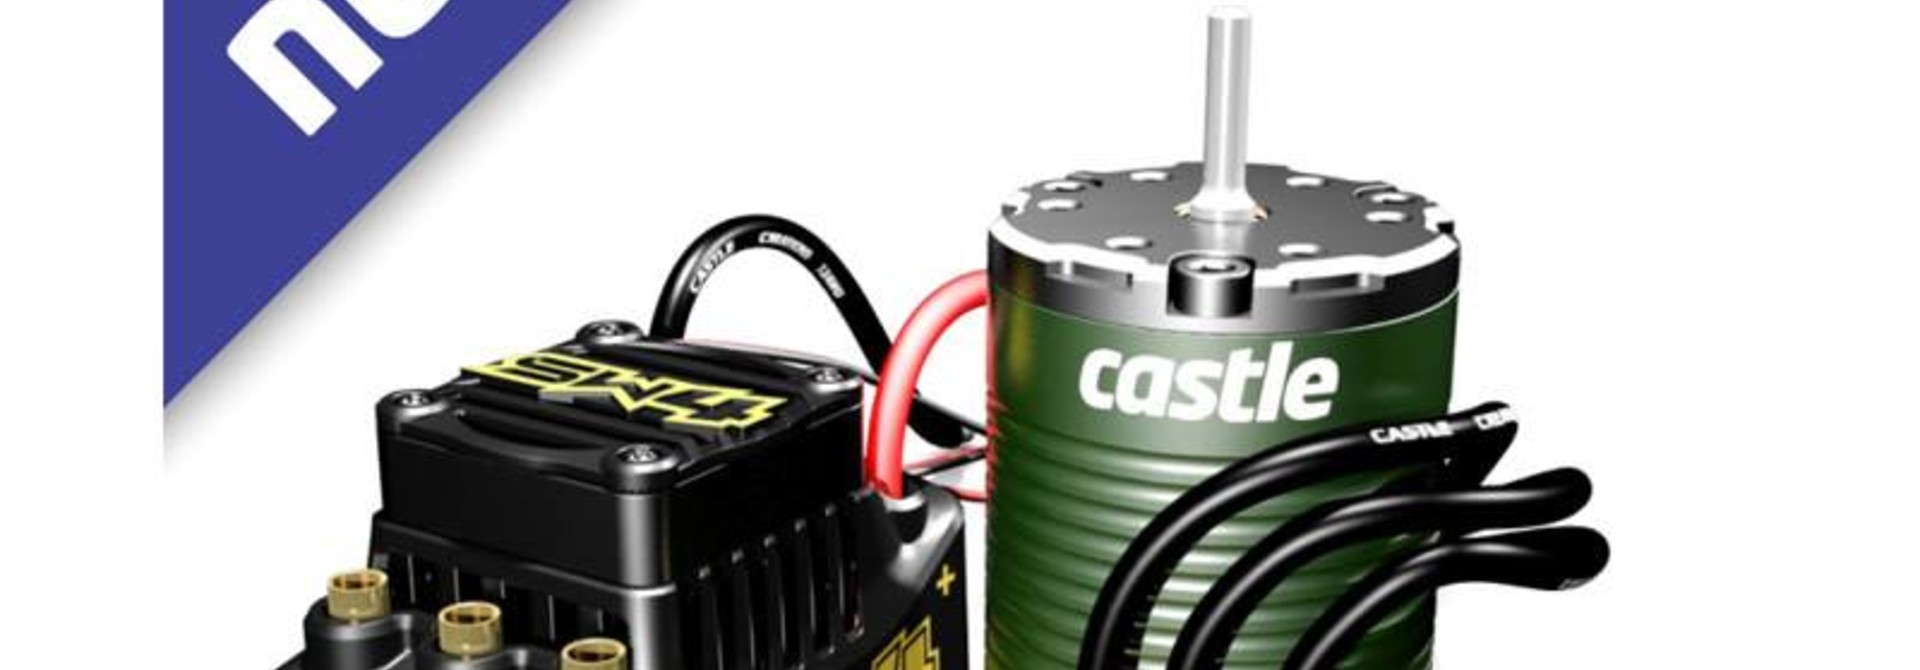 Castle - Sidewinder SW4, 12.6V, 2A BEC, WP Sensorless ESC W/1406-7700 Sensored motor